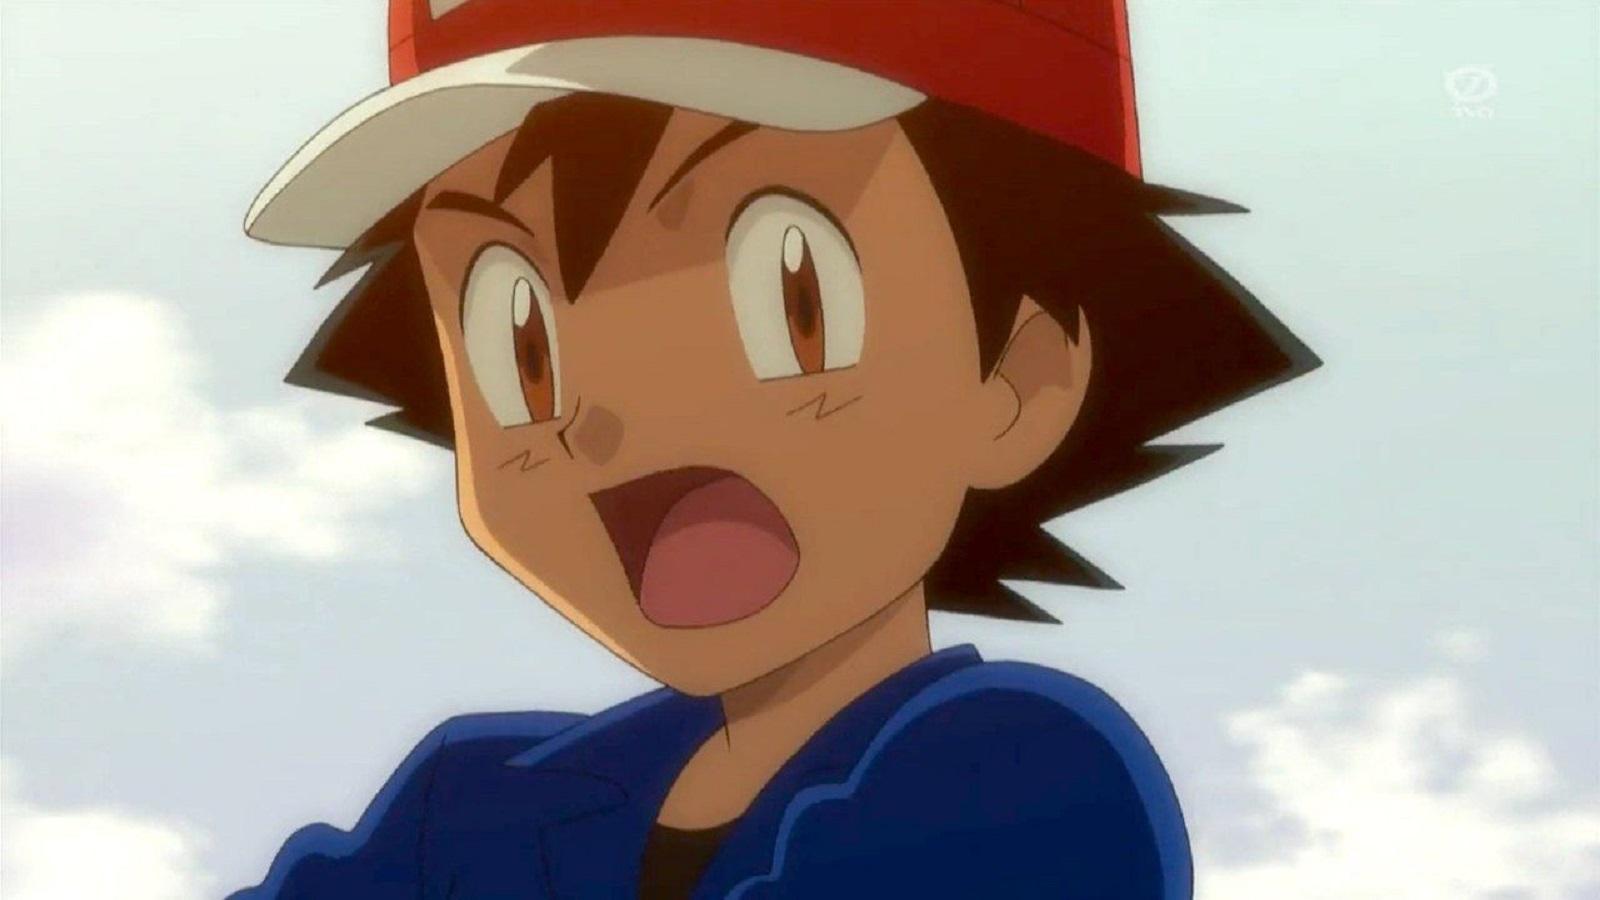 ◓ Anime Pokémon Journeys (Especial Ash Ketchum) • Episódio 146: Pocket  Monsters: O Contra-ataque da Equipe Rocket! (EP9)